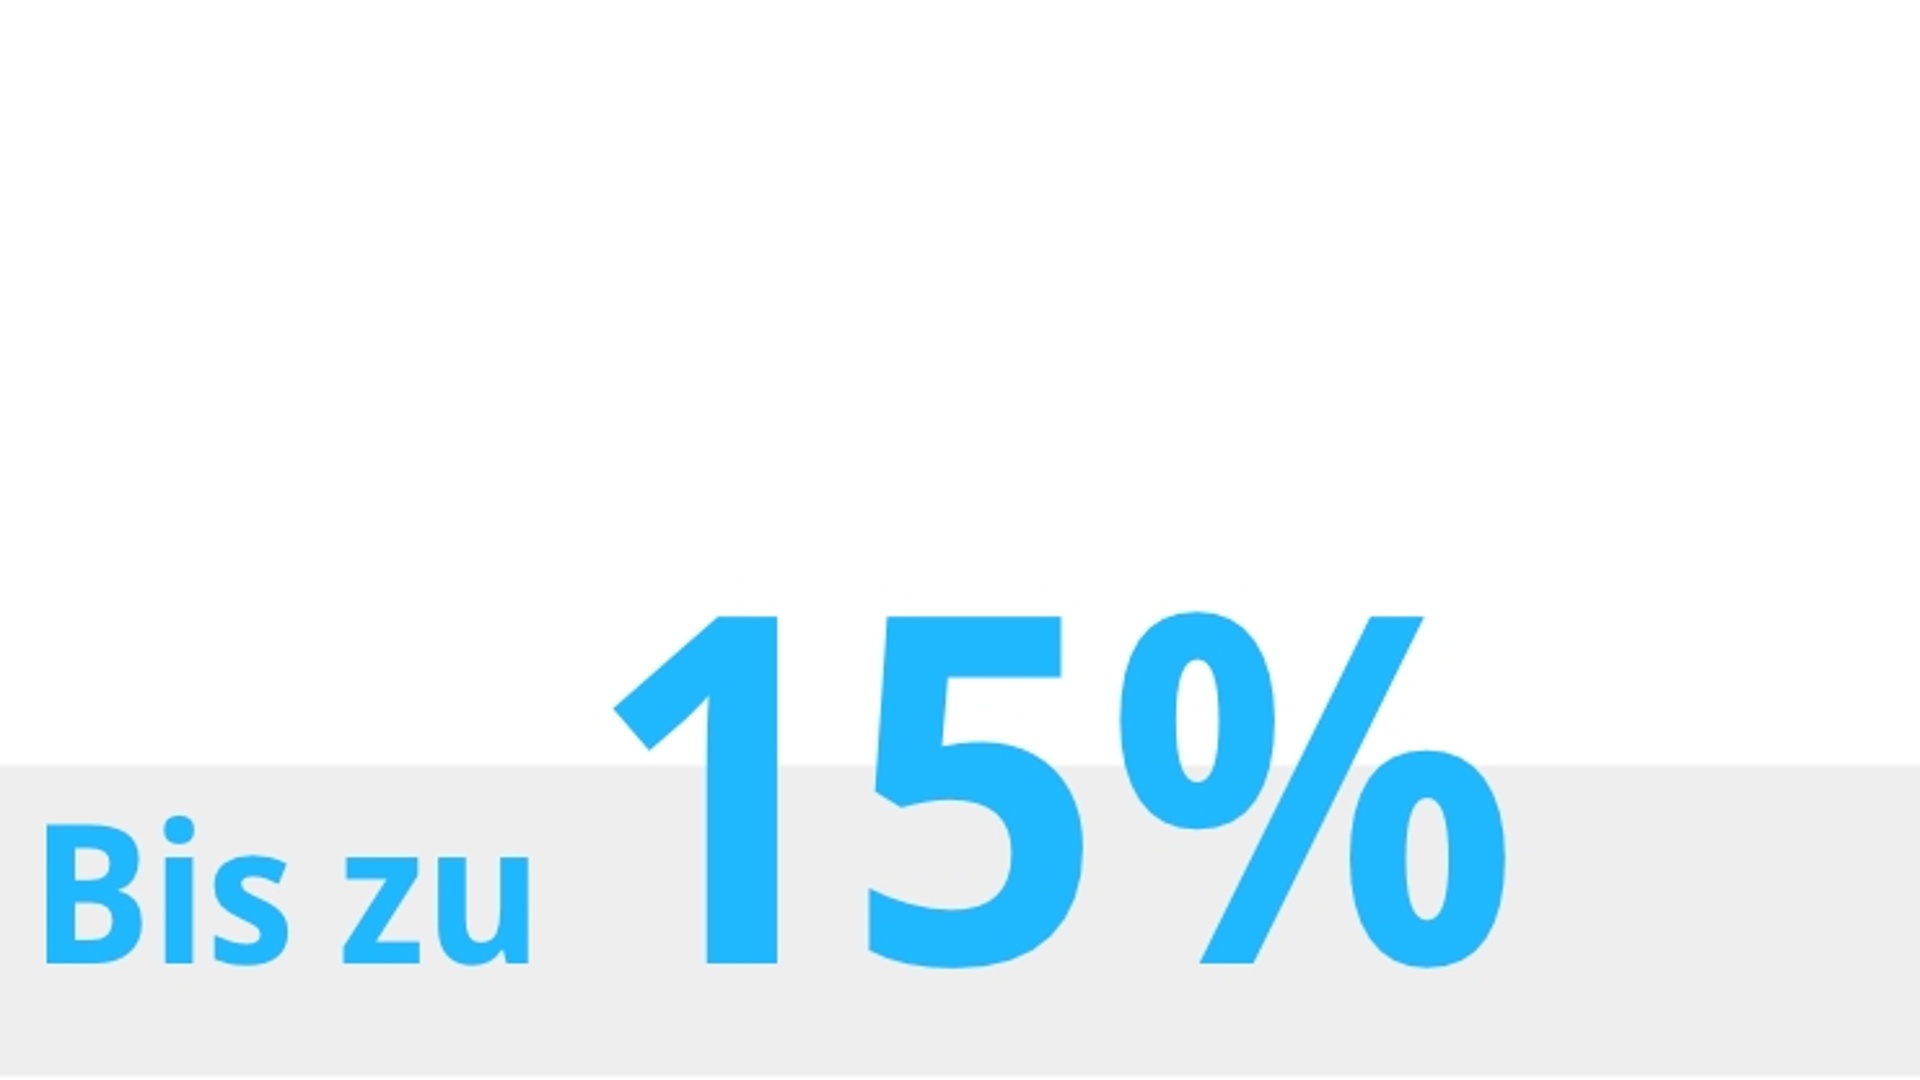 Das Bild zeigt den Schriftzug "Bis zu 15 %".